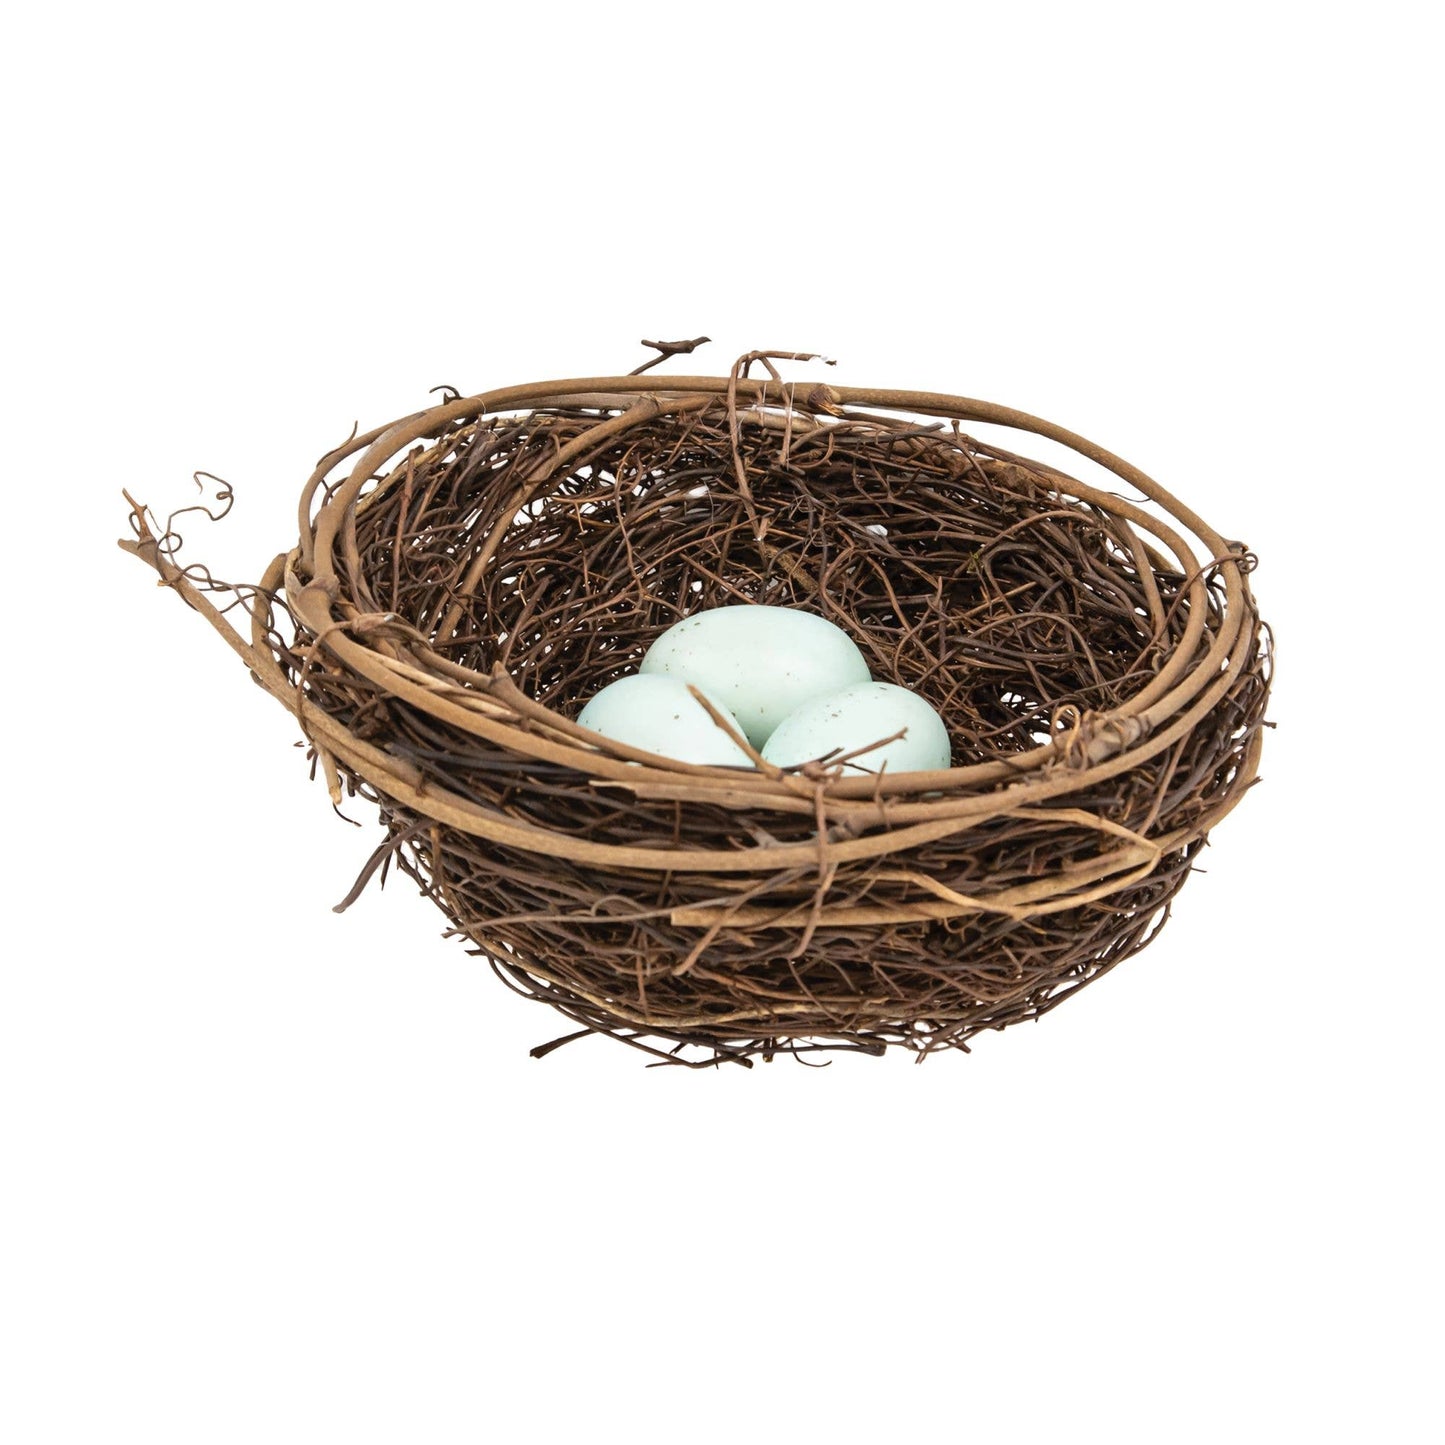 Twig & Vine Bird Nest w/Blue Eggs, 5.5"H